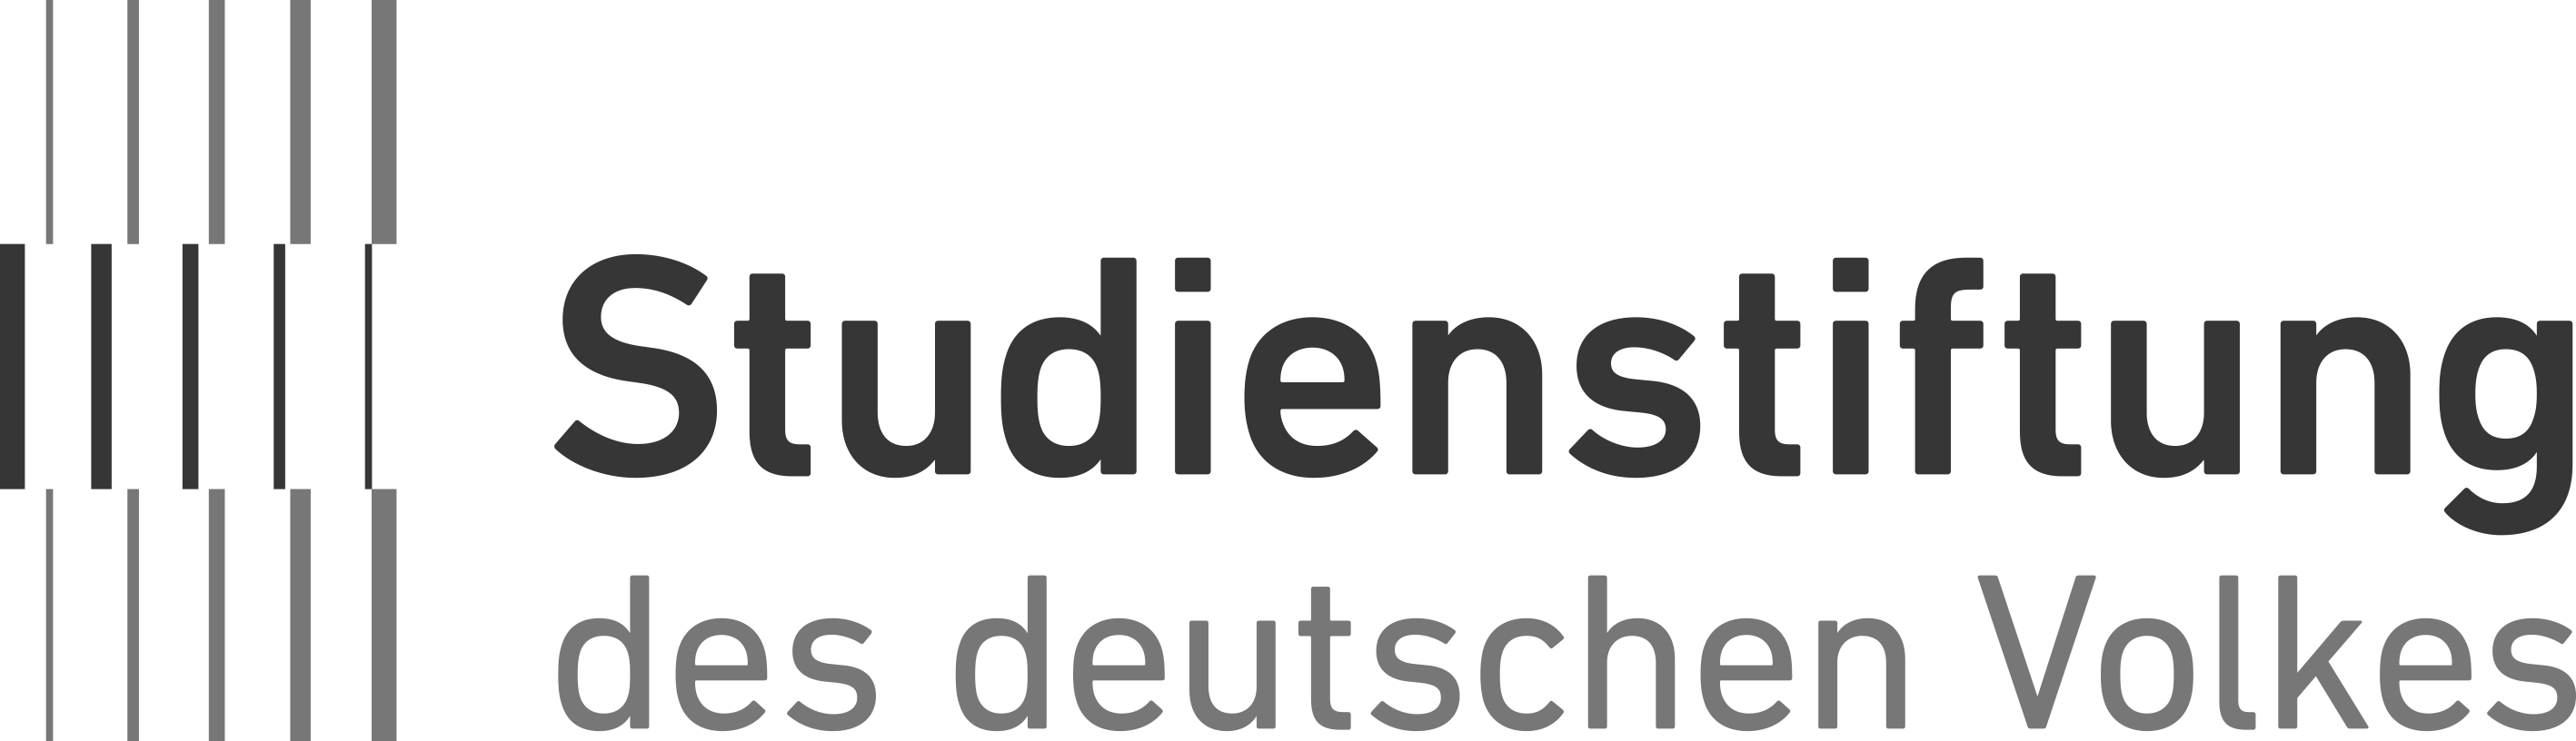 Studienstiftung_Logo_schwarzweiss